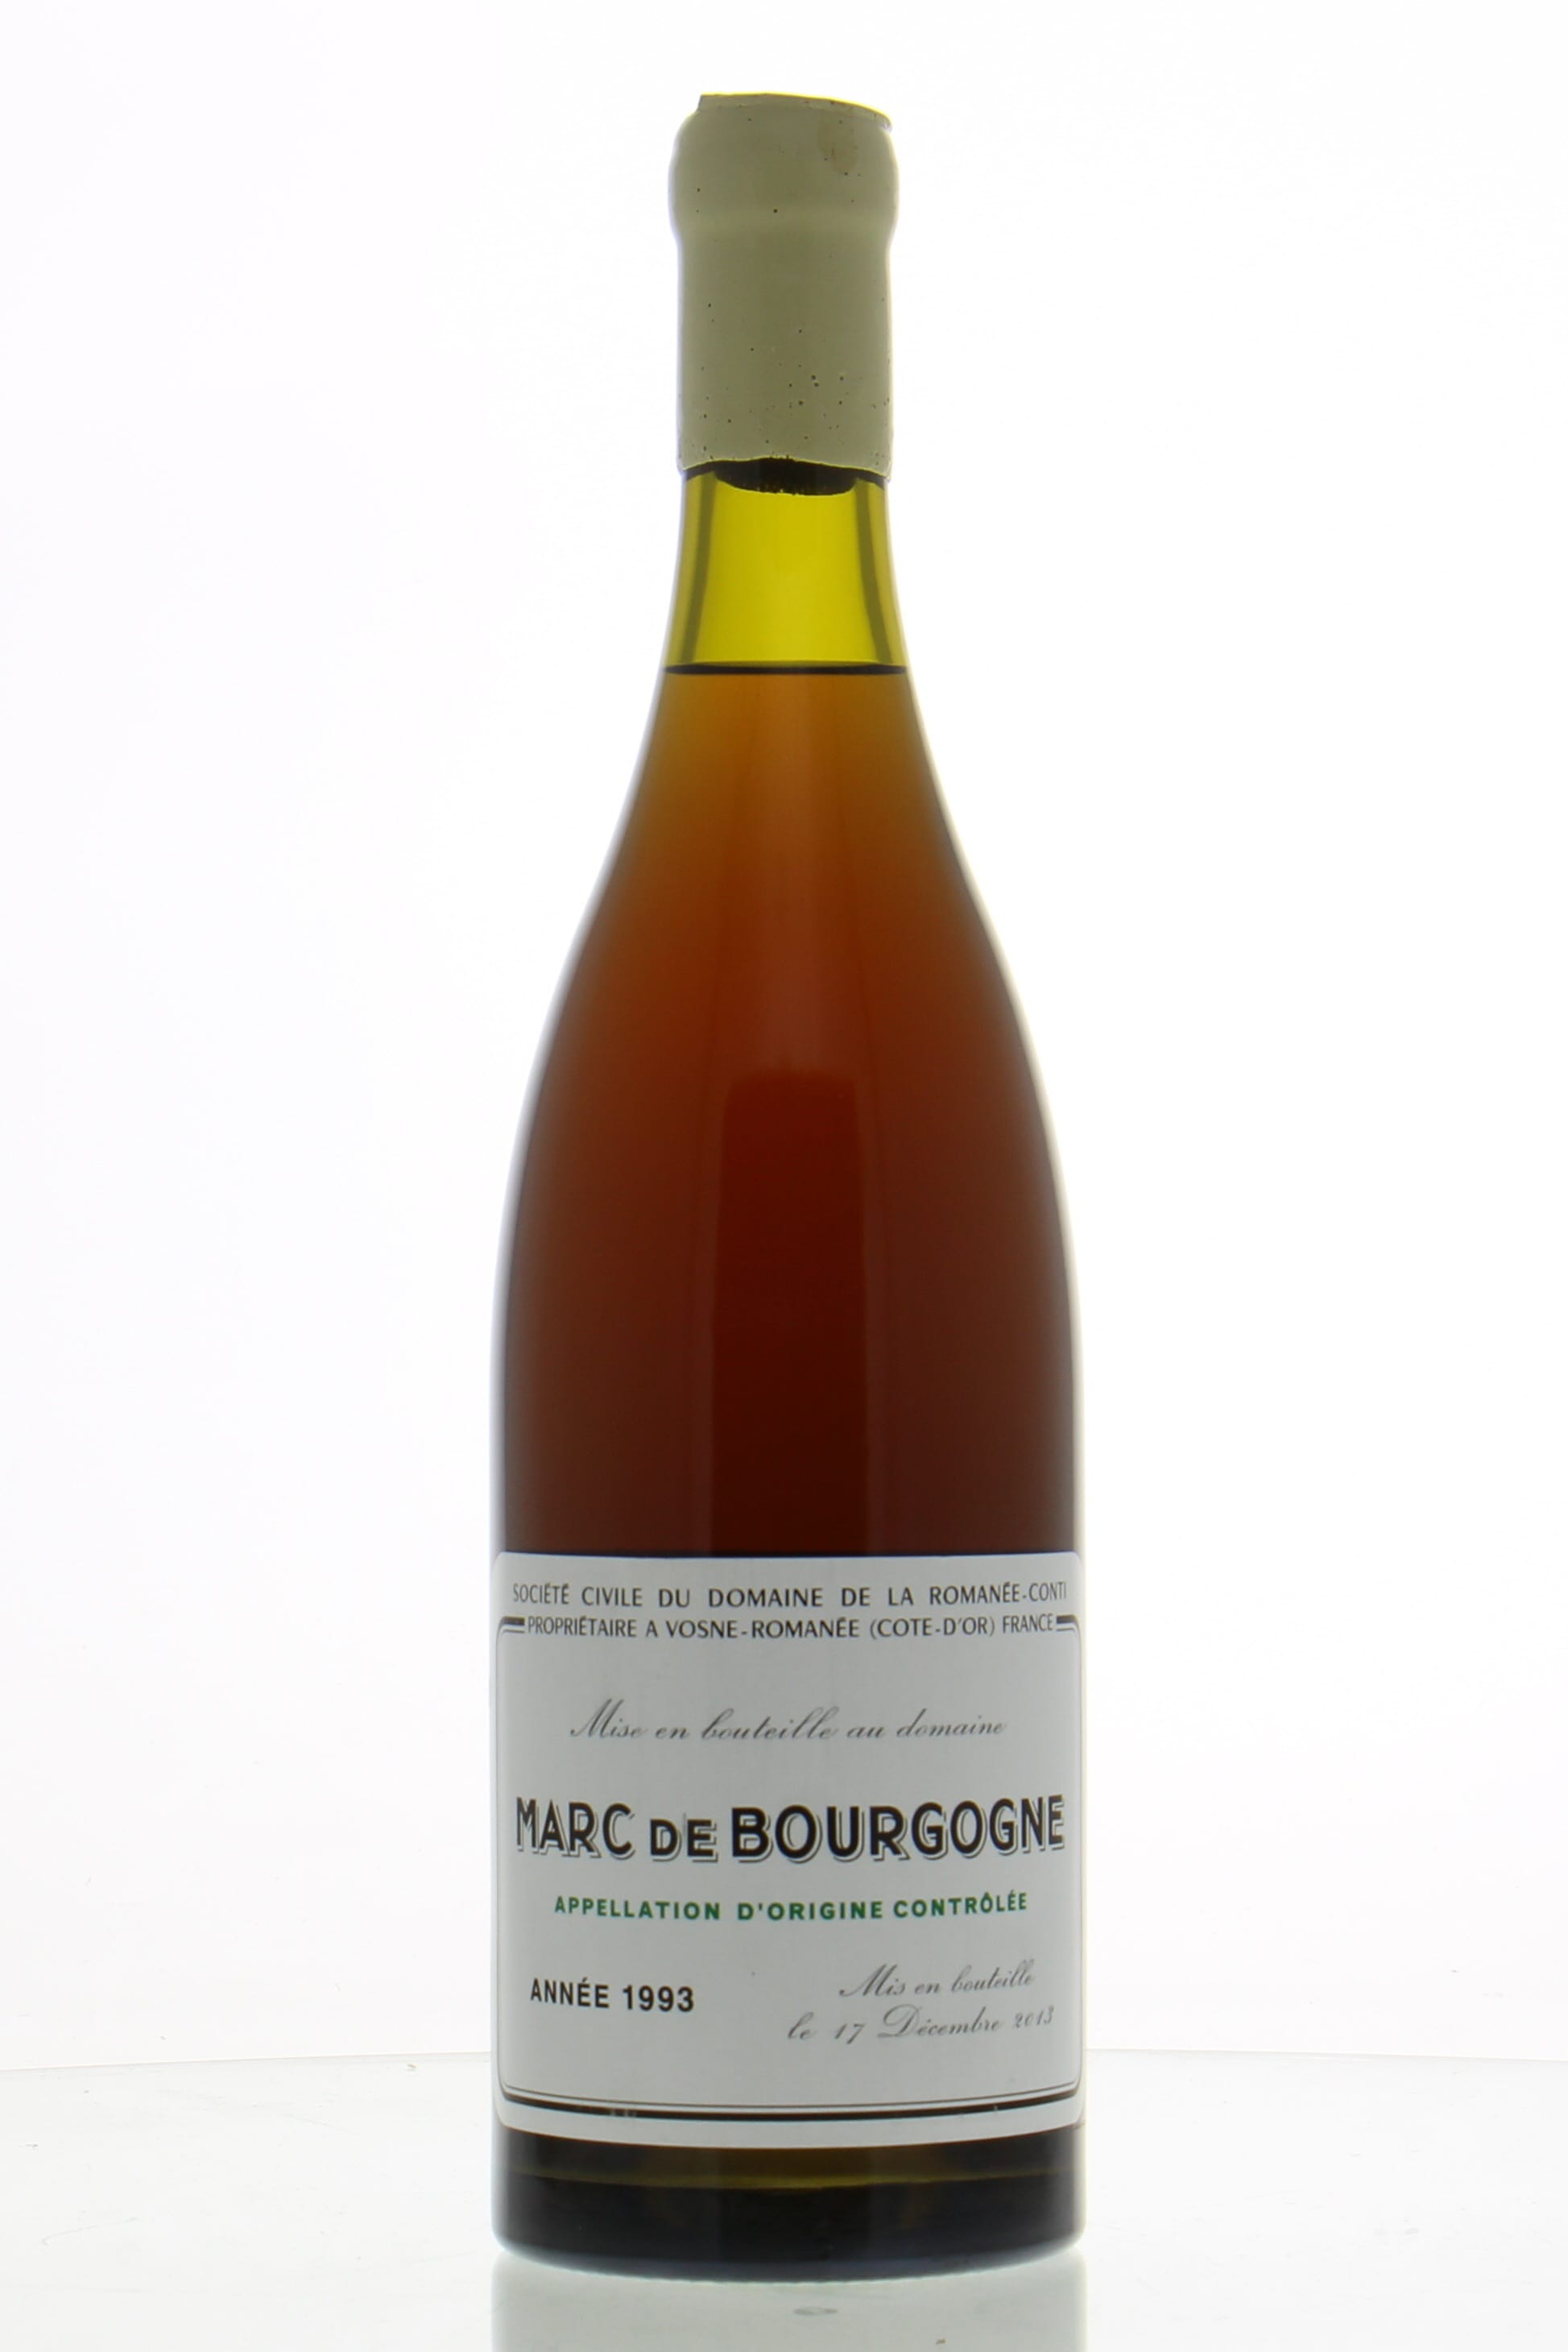 Domaine de la Romanee Conti - Marc de Bourgogne 1993 Perfect